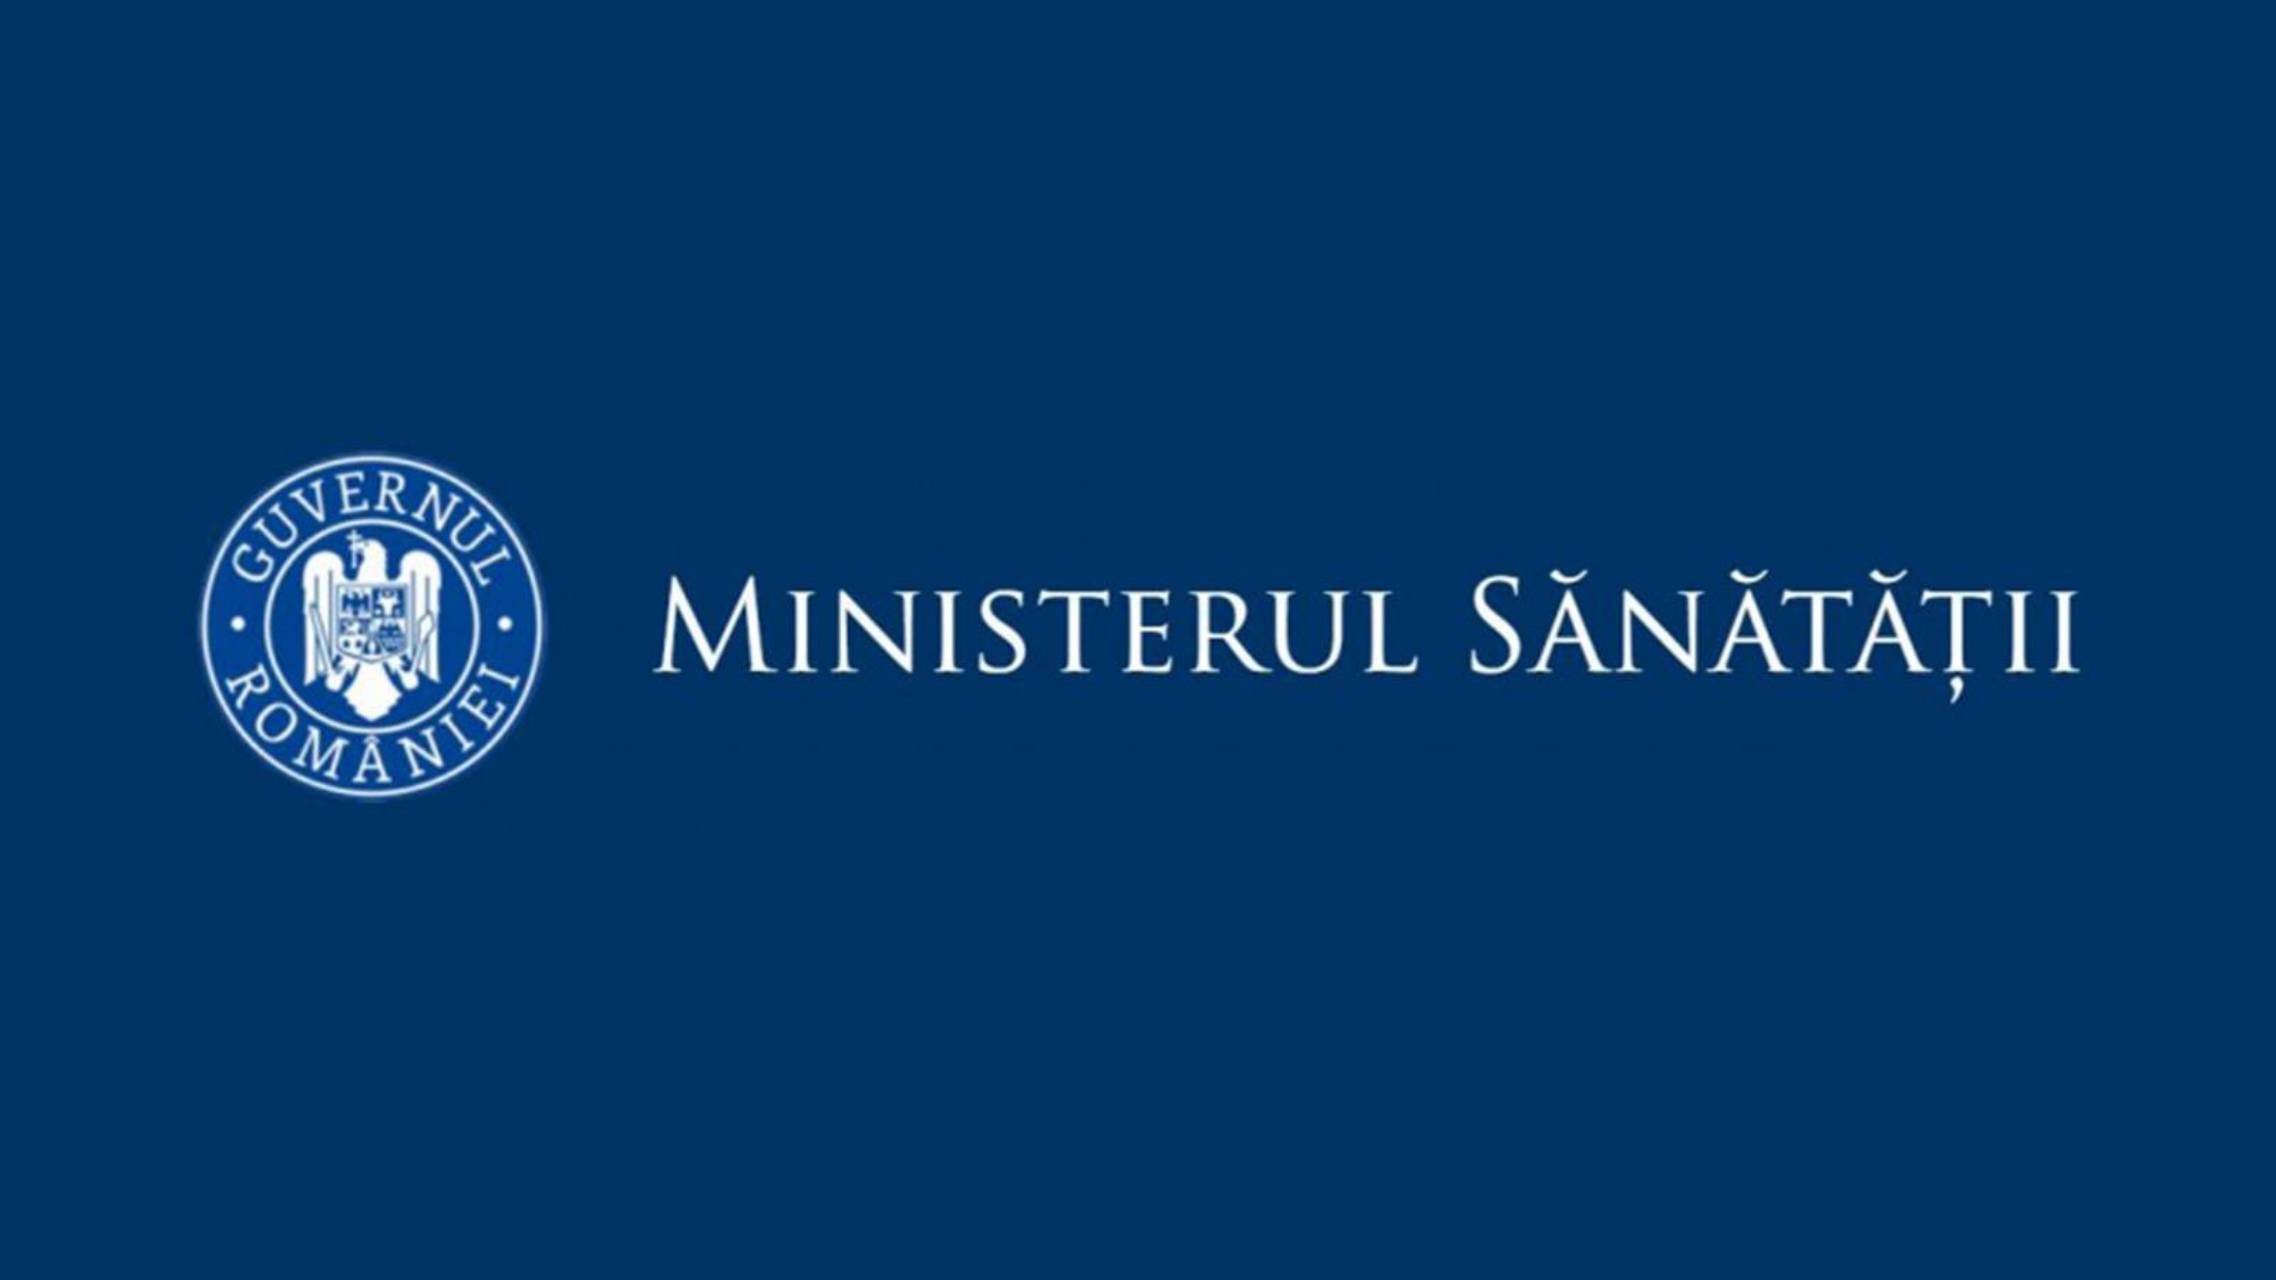 Ministerul Sanatatii Ratele de Incidenta cele mai Mari din Judetele din Romania